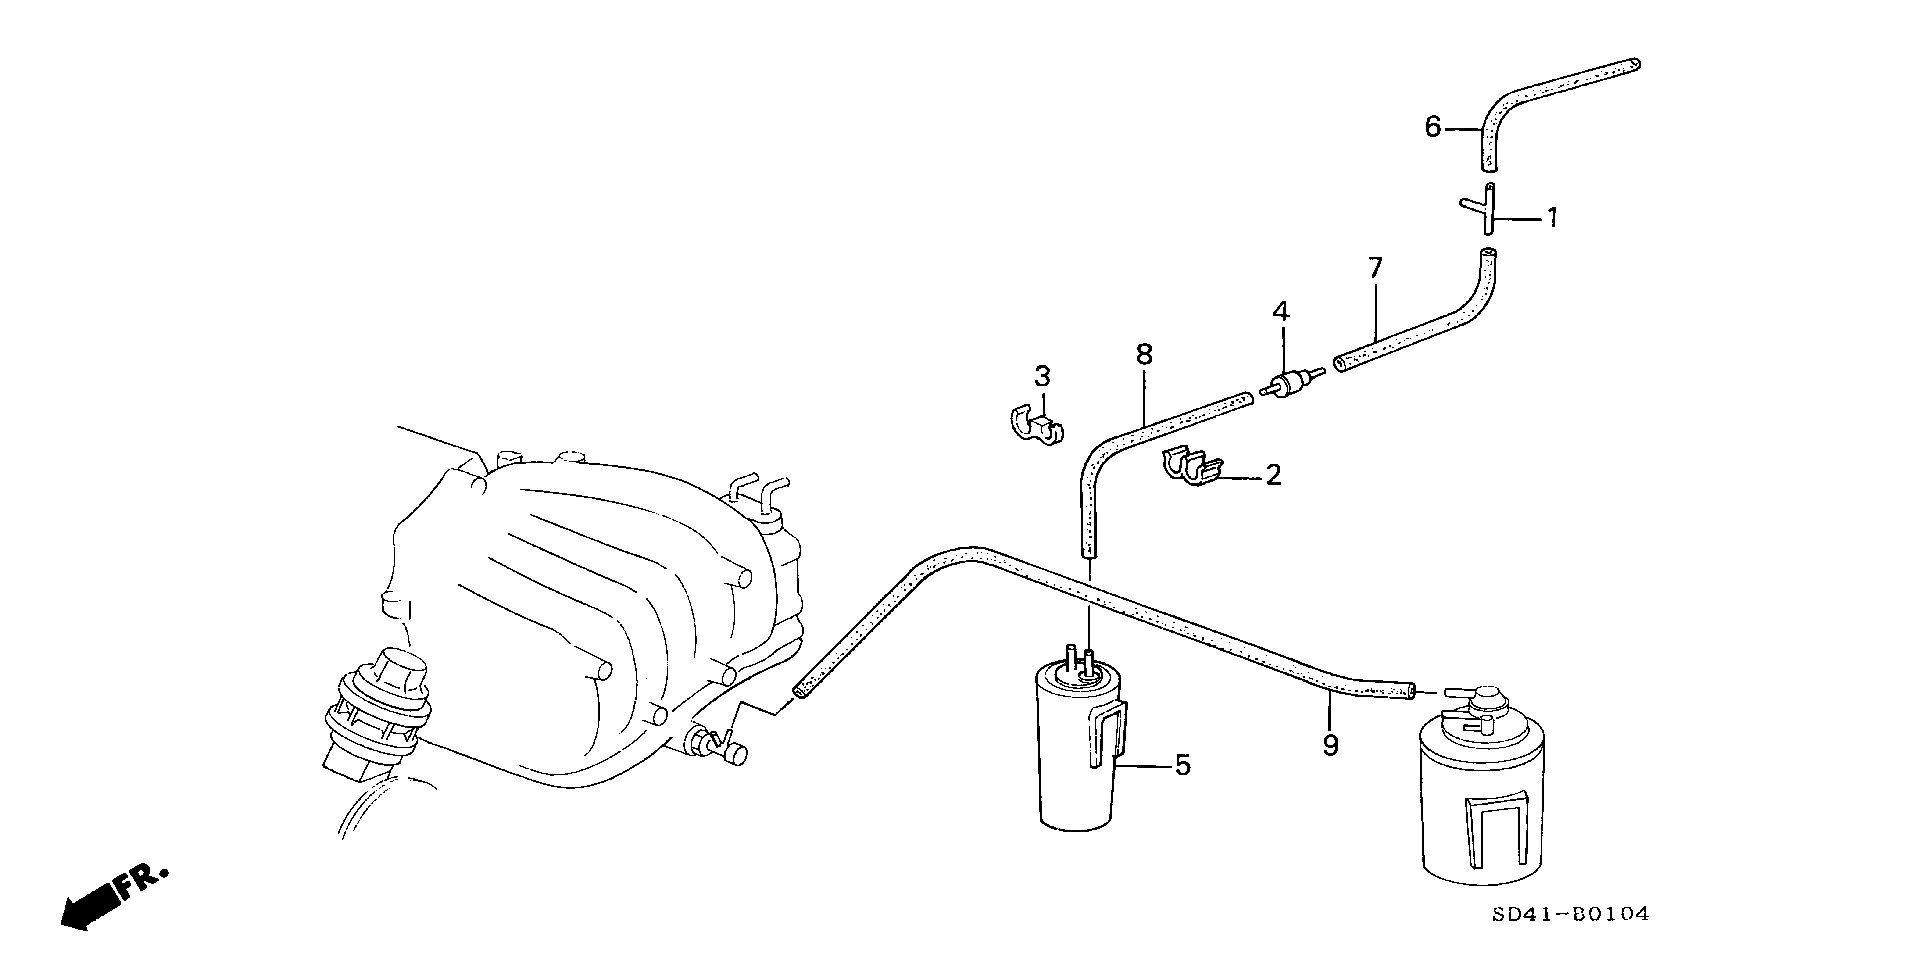 CANISTER TUBING (KA1:100,110)